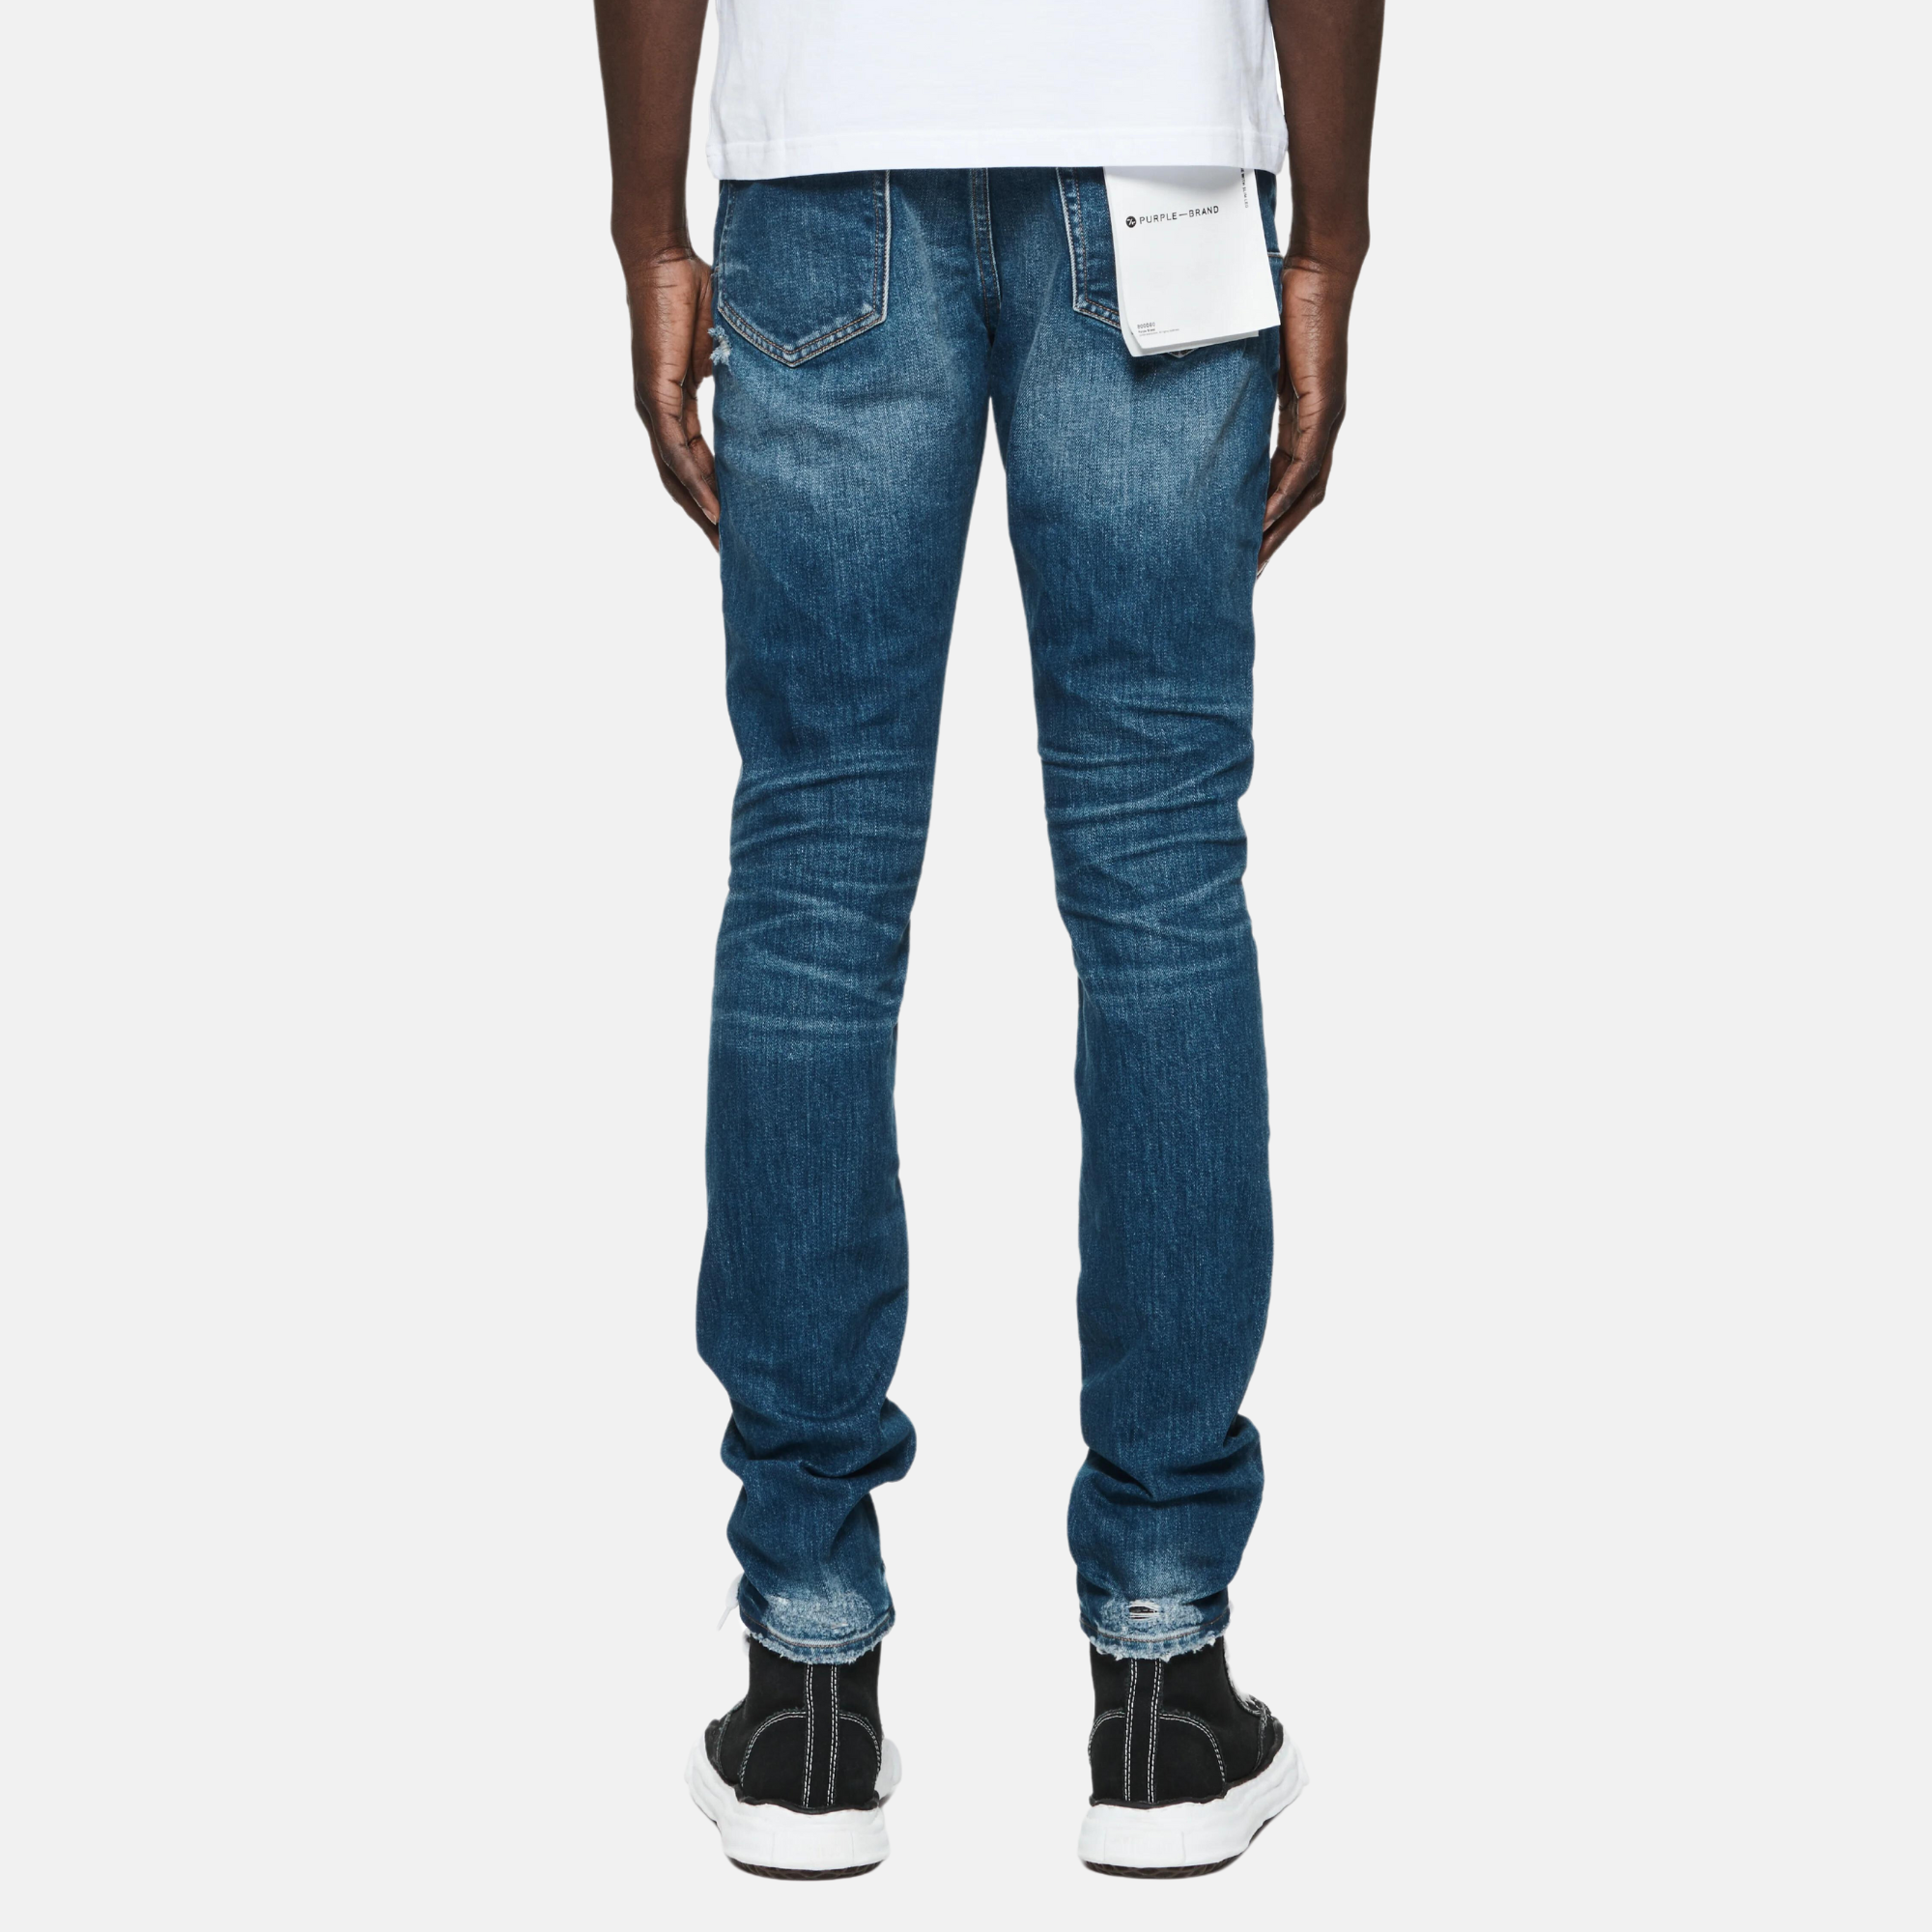 Streetwear Purple Brand Distressed Light Blue Jeans Size 34”